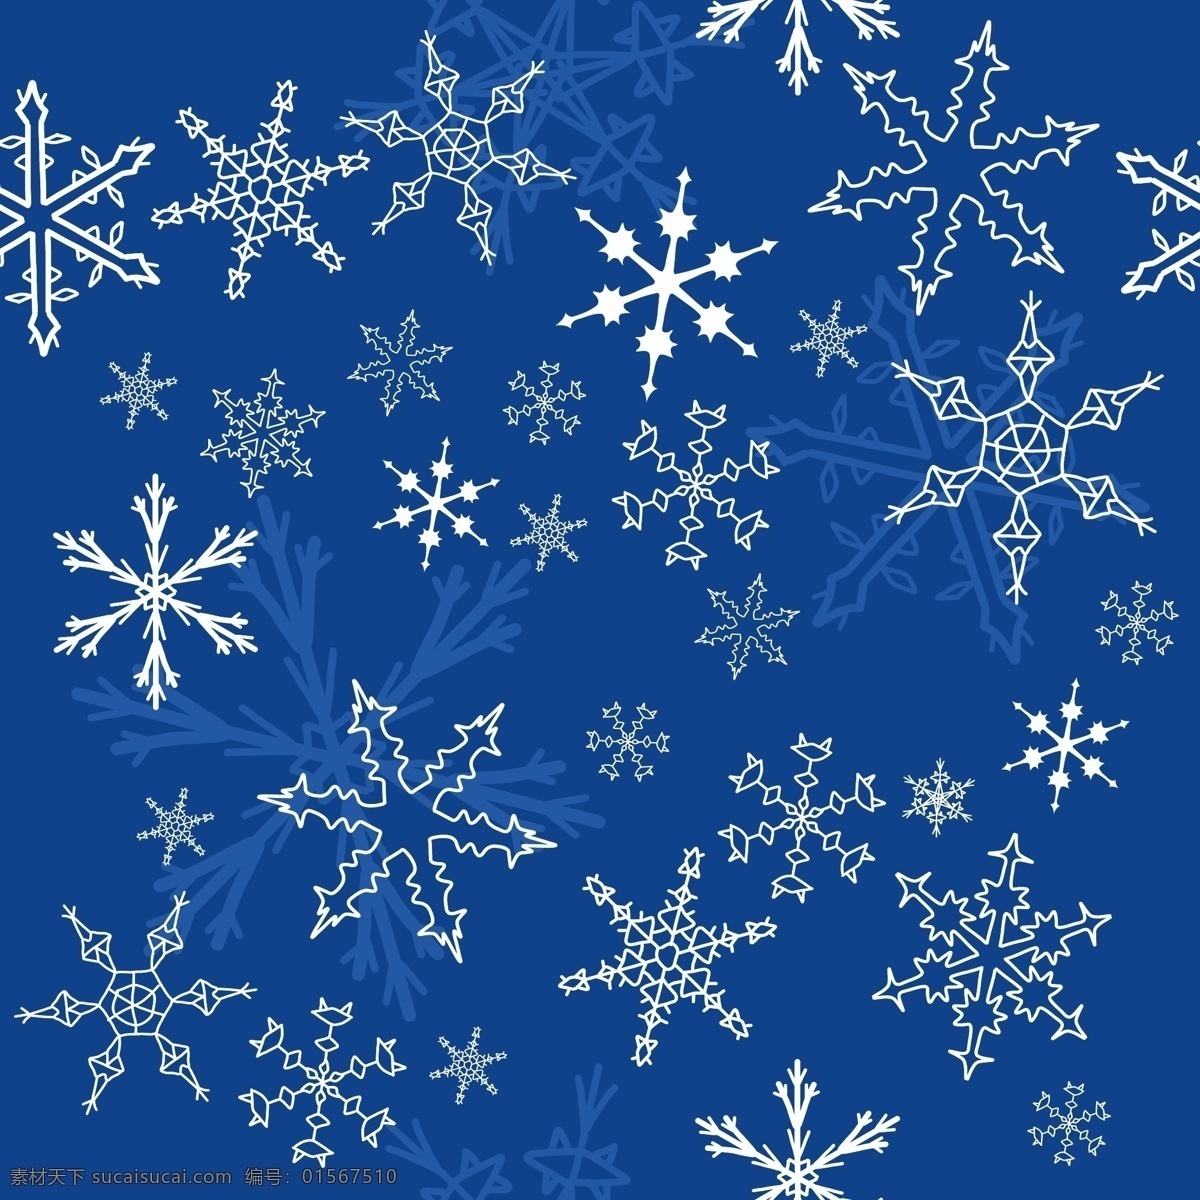 矢量 精美 蓝色 雪花 背景 冬季 矢量素材 矢量图 花纹花边